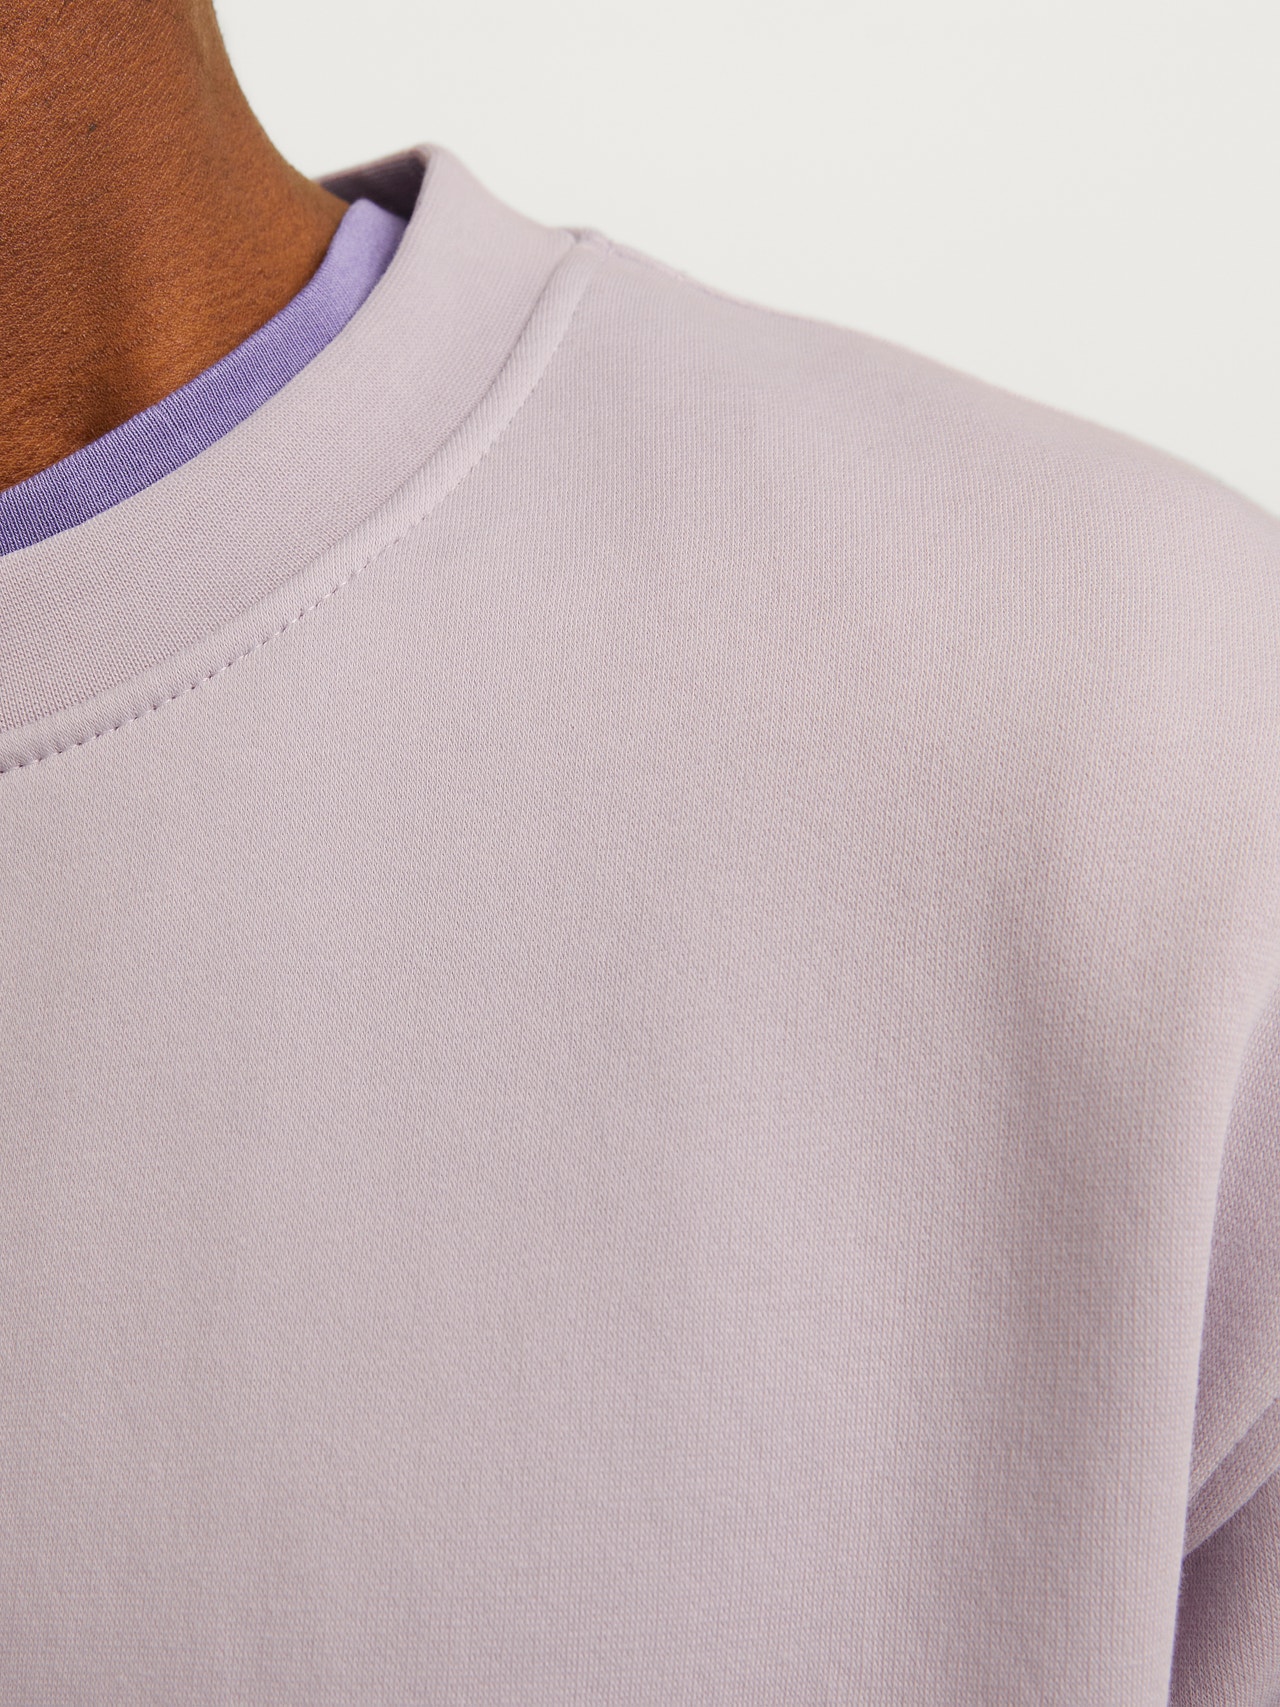 Jack & Jones Gedruckt Sweatshirt mit Rundhals -Lavender Frost - 12241694